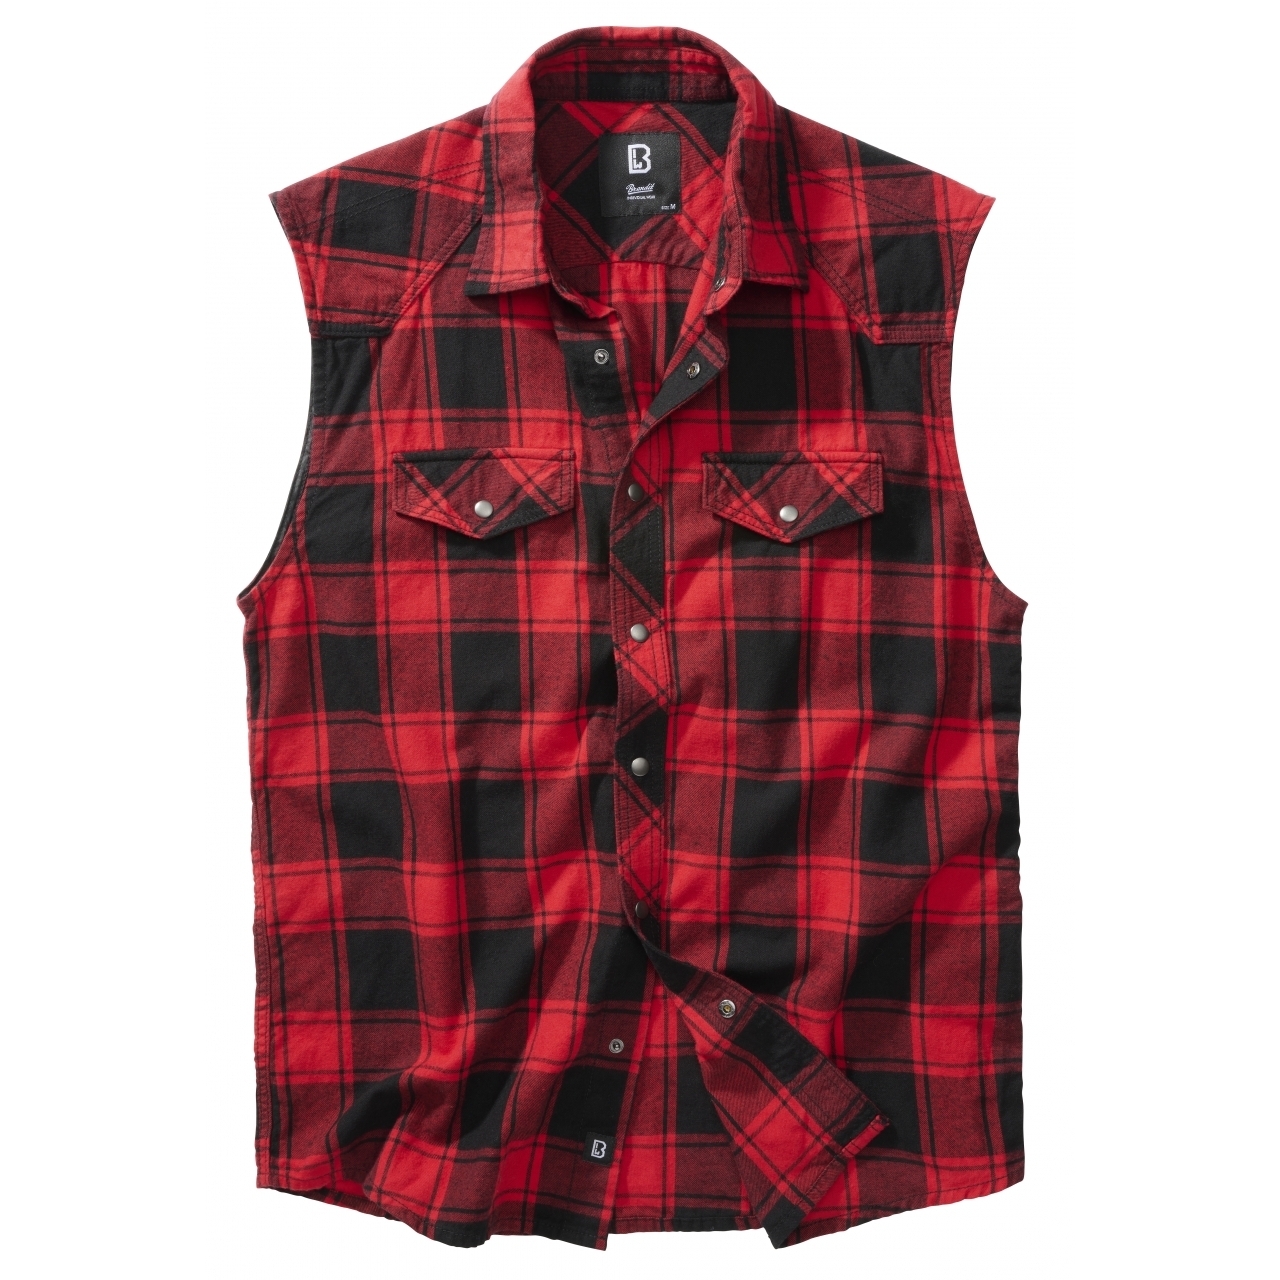 Košile Brandit Check Shirt Sleeveless - červená-černá, L